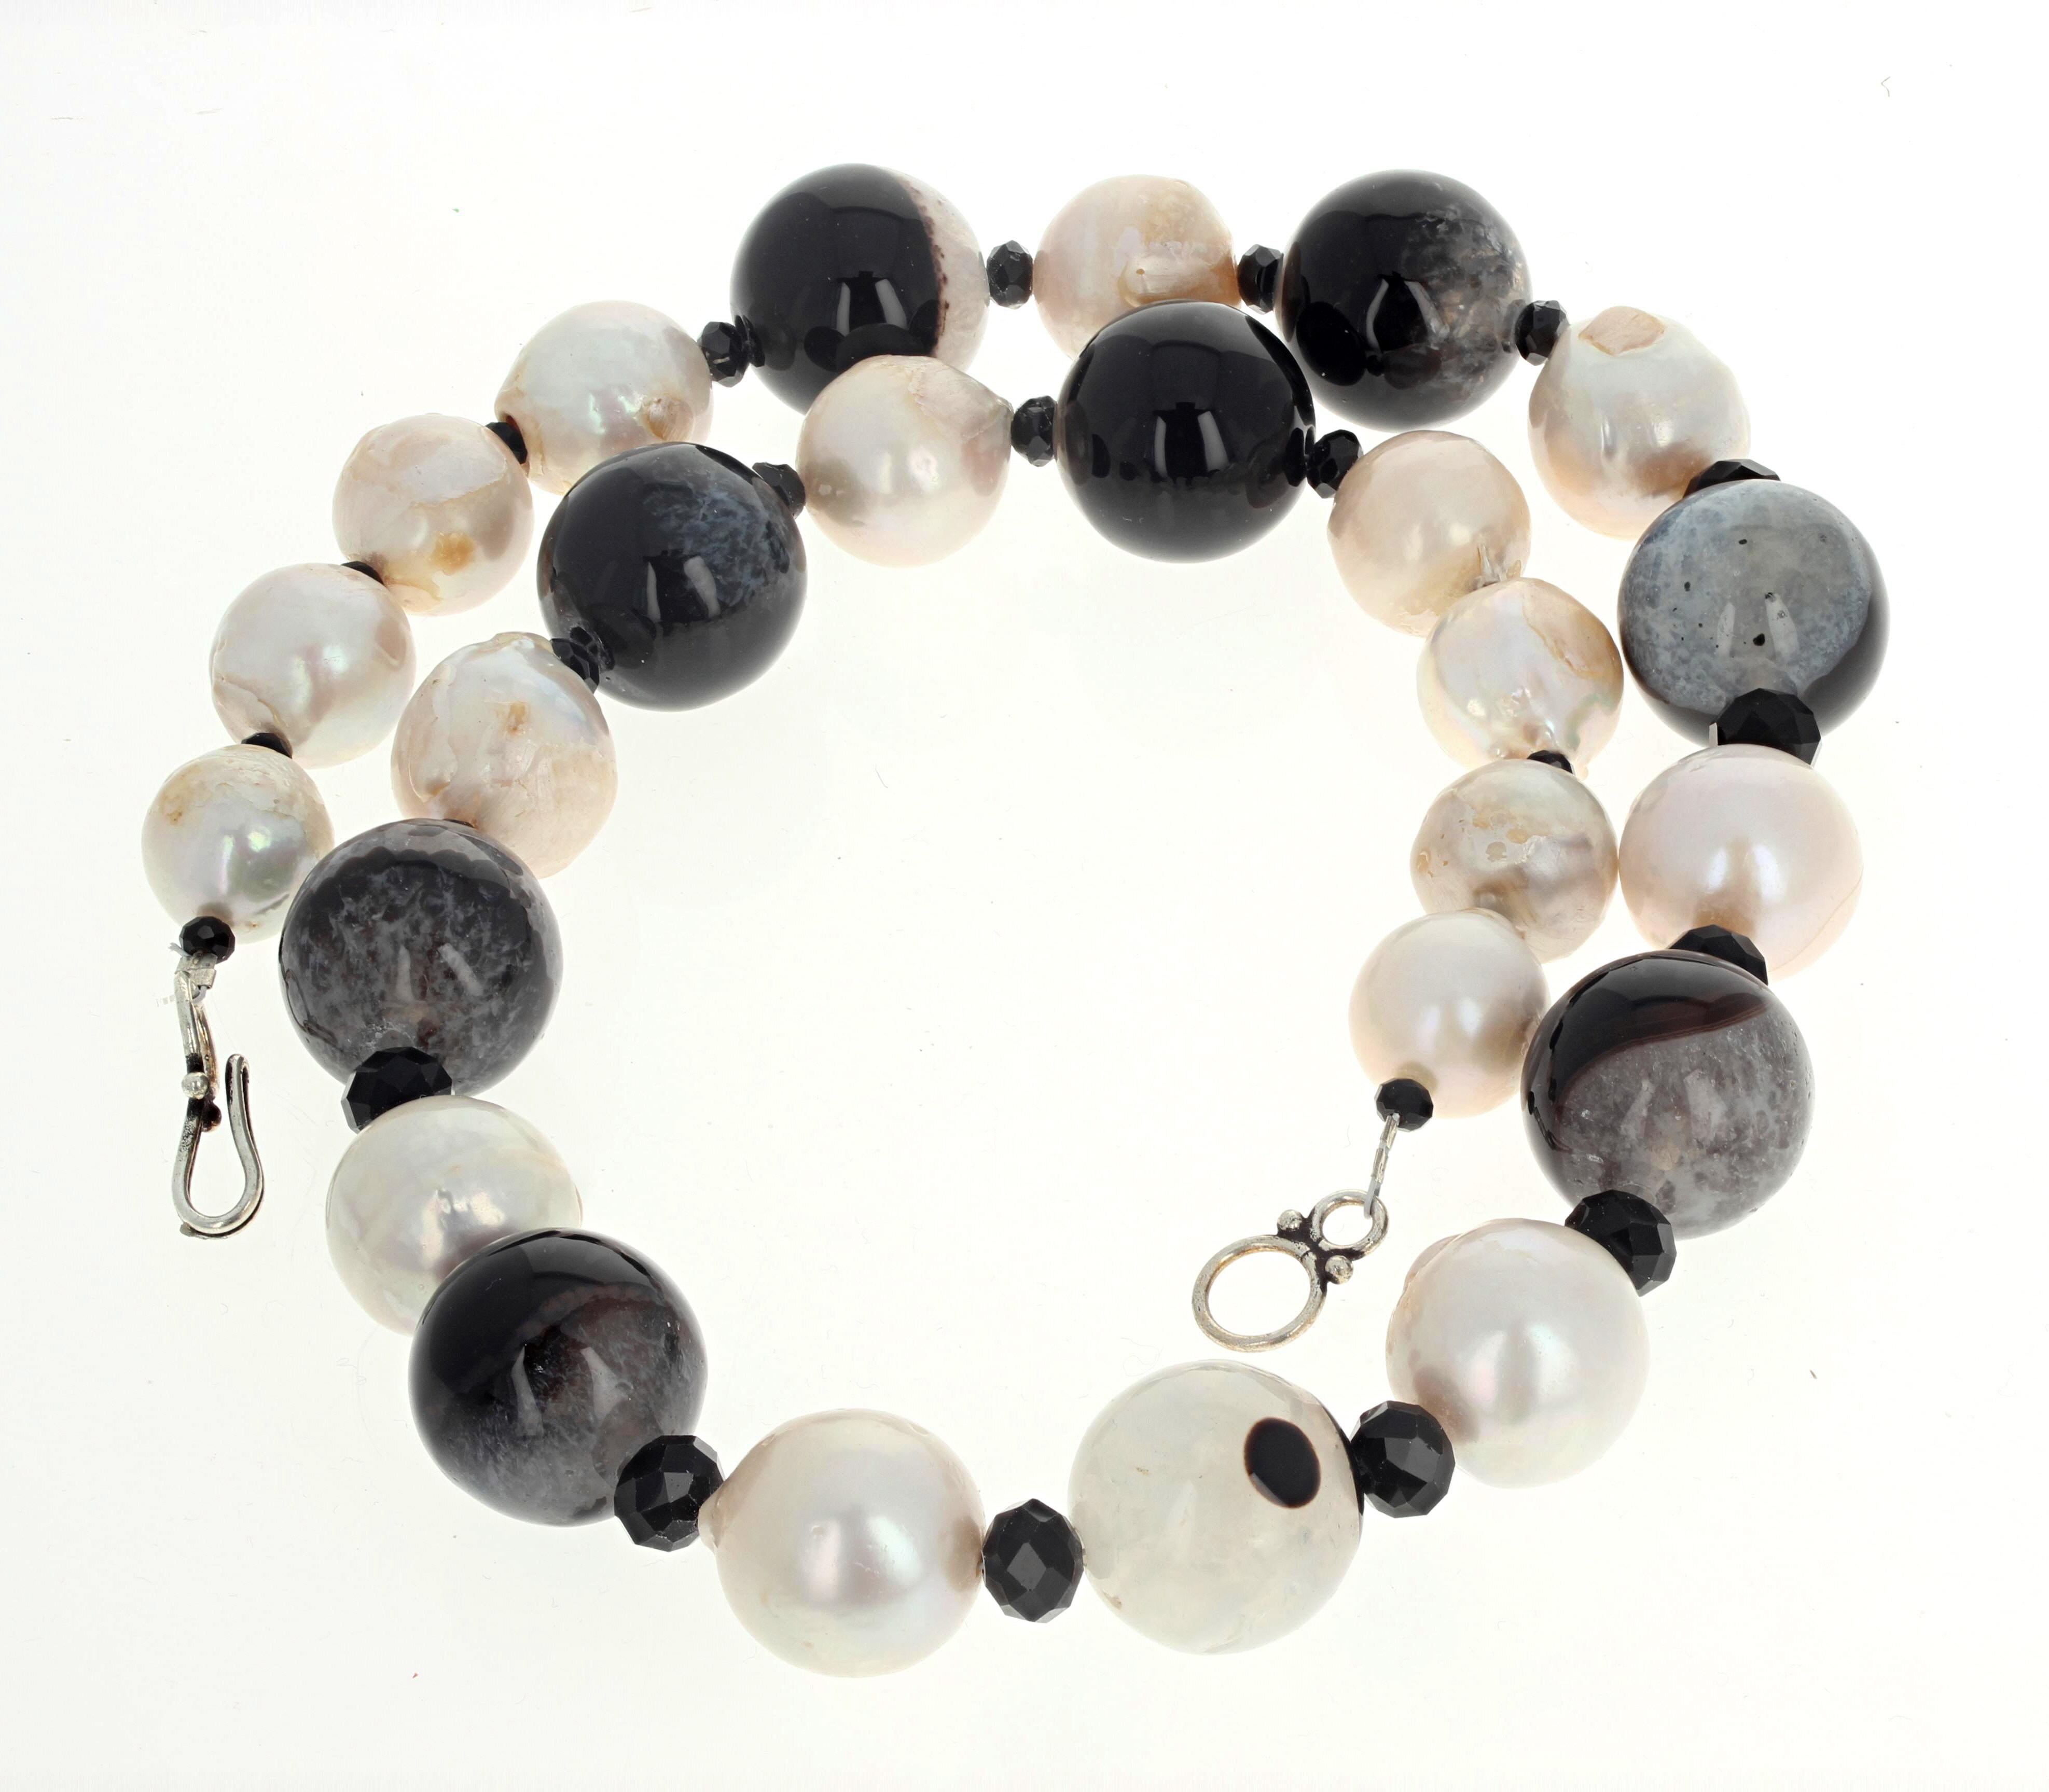 Ces Agates naturelles noir et blanc très polies (environ 20 mm) sont rehaussées par des Perles blanches d'eau douce et de l'Onyx noir naturel très poli, taillé comme une pierre précieuse.   Les plus grosses perles mesurent environ 18 mm.   Ce